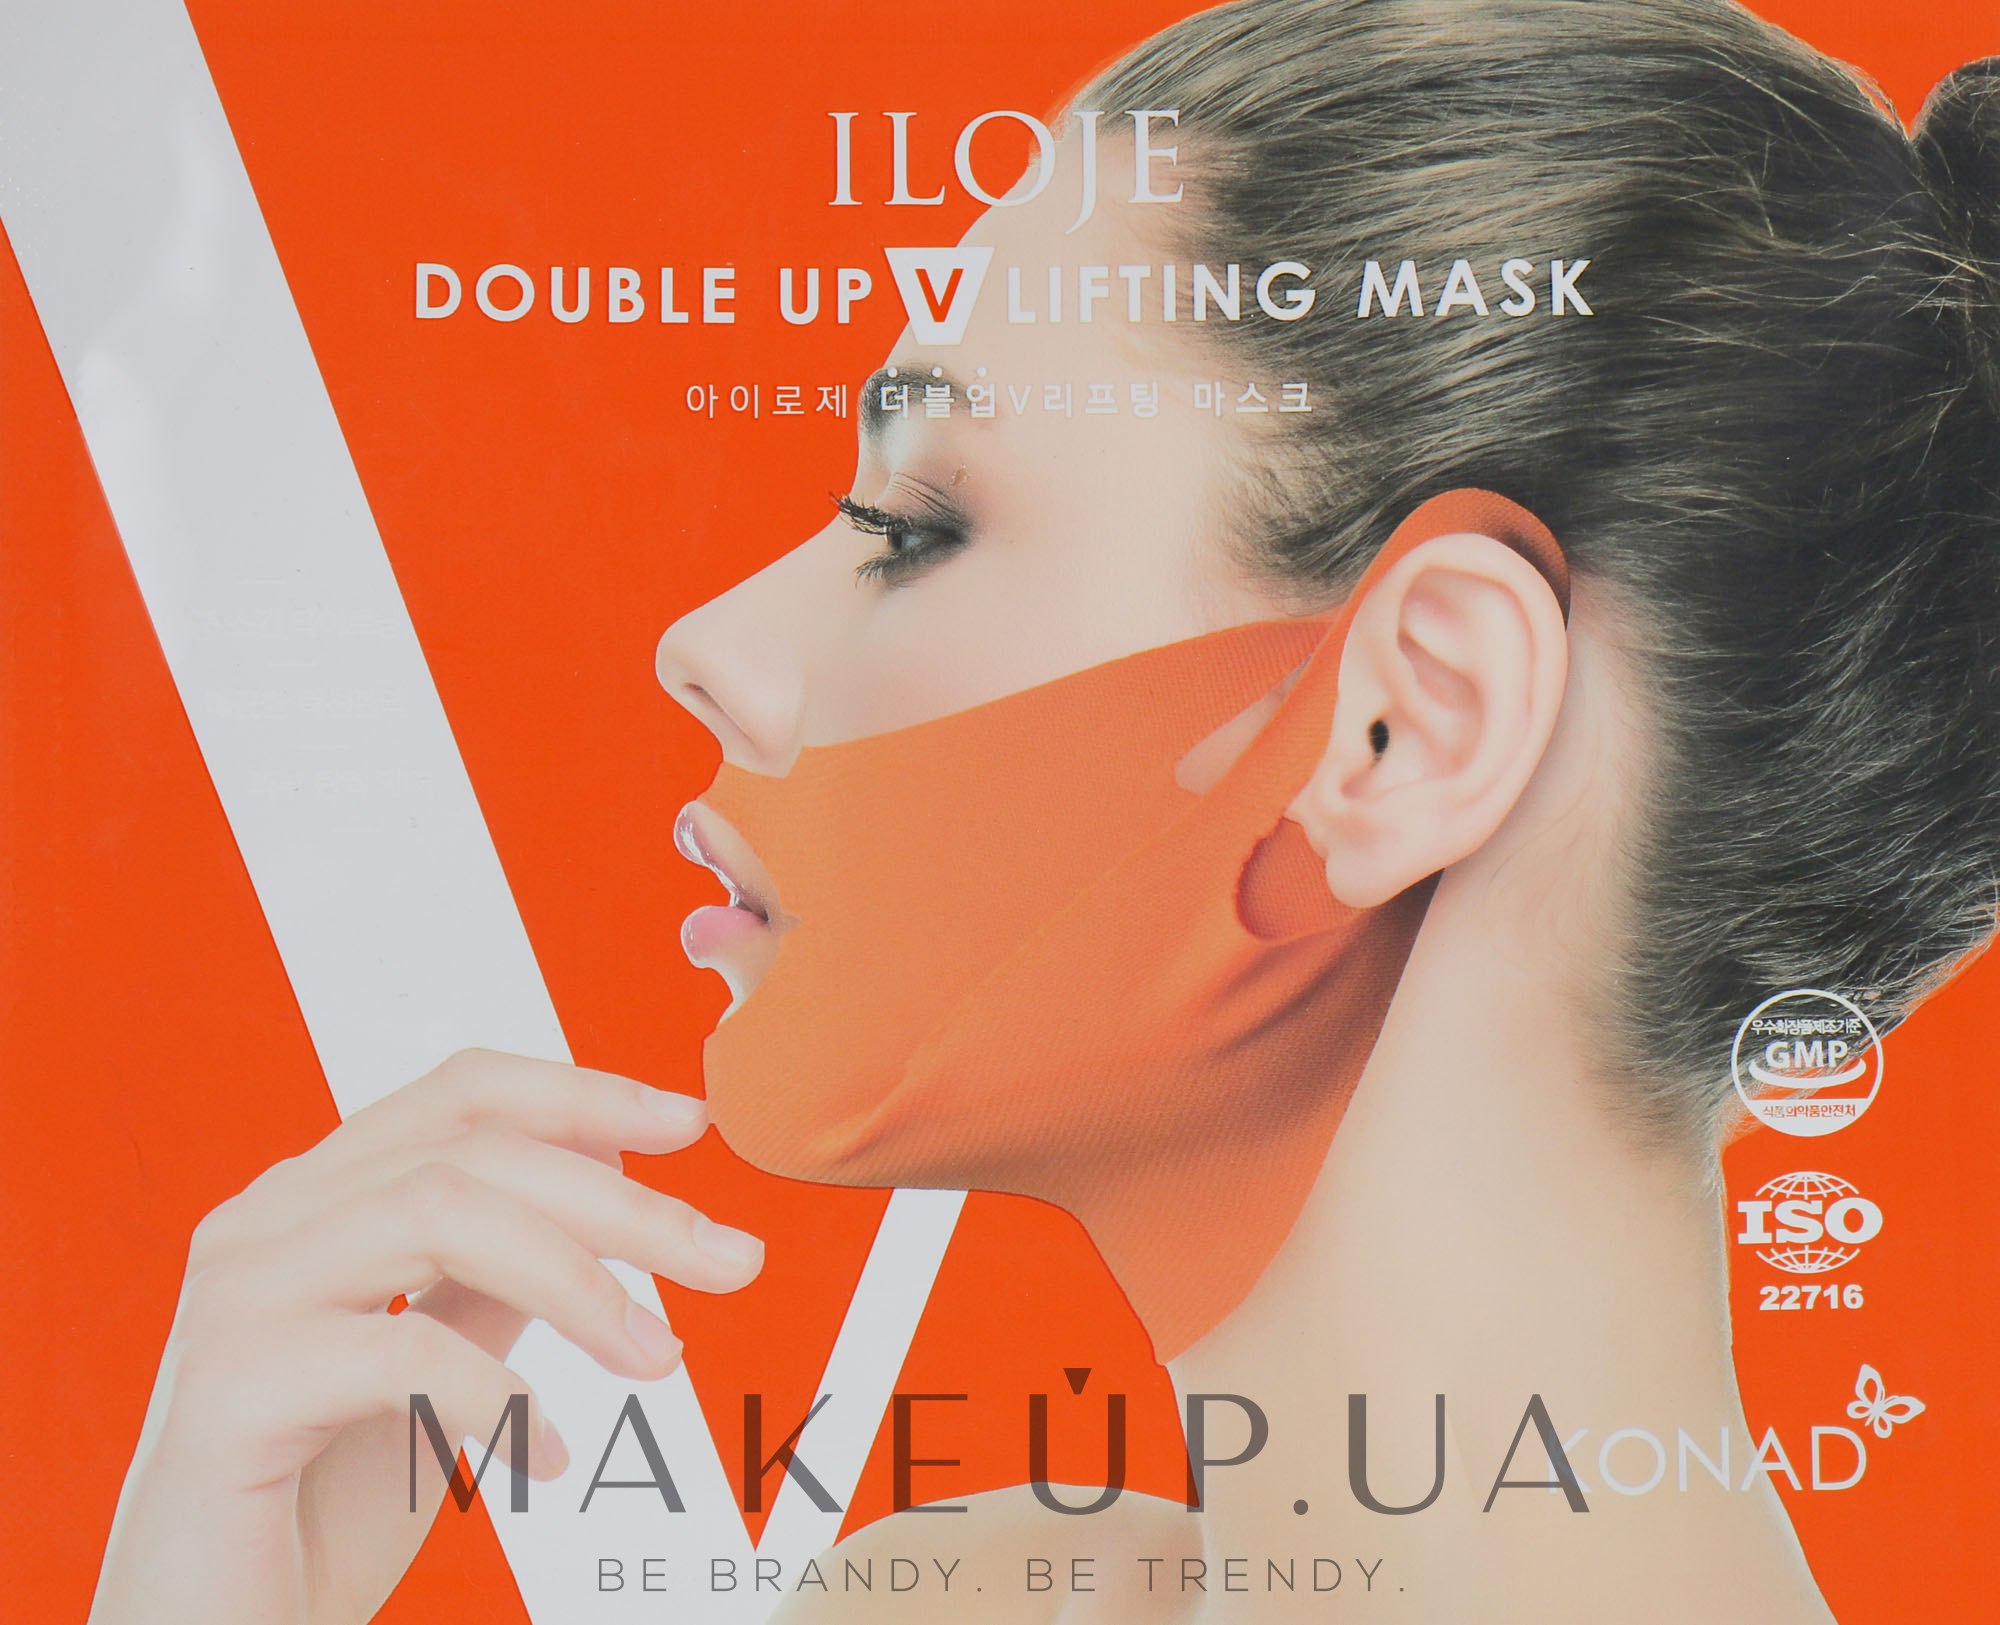 Корректирующая лифтинг-маска от второго подбородка - Konad Iloje Double Up V Lifting Mask — фото 21g